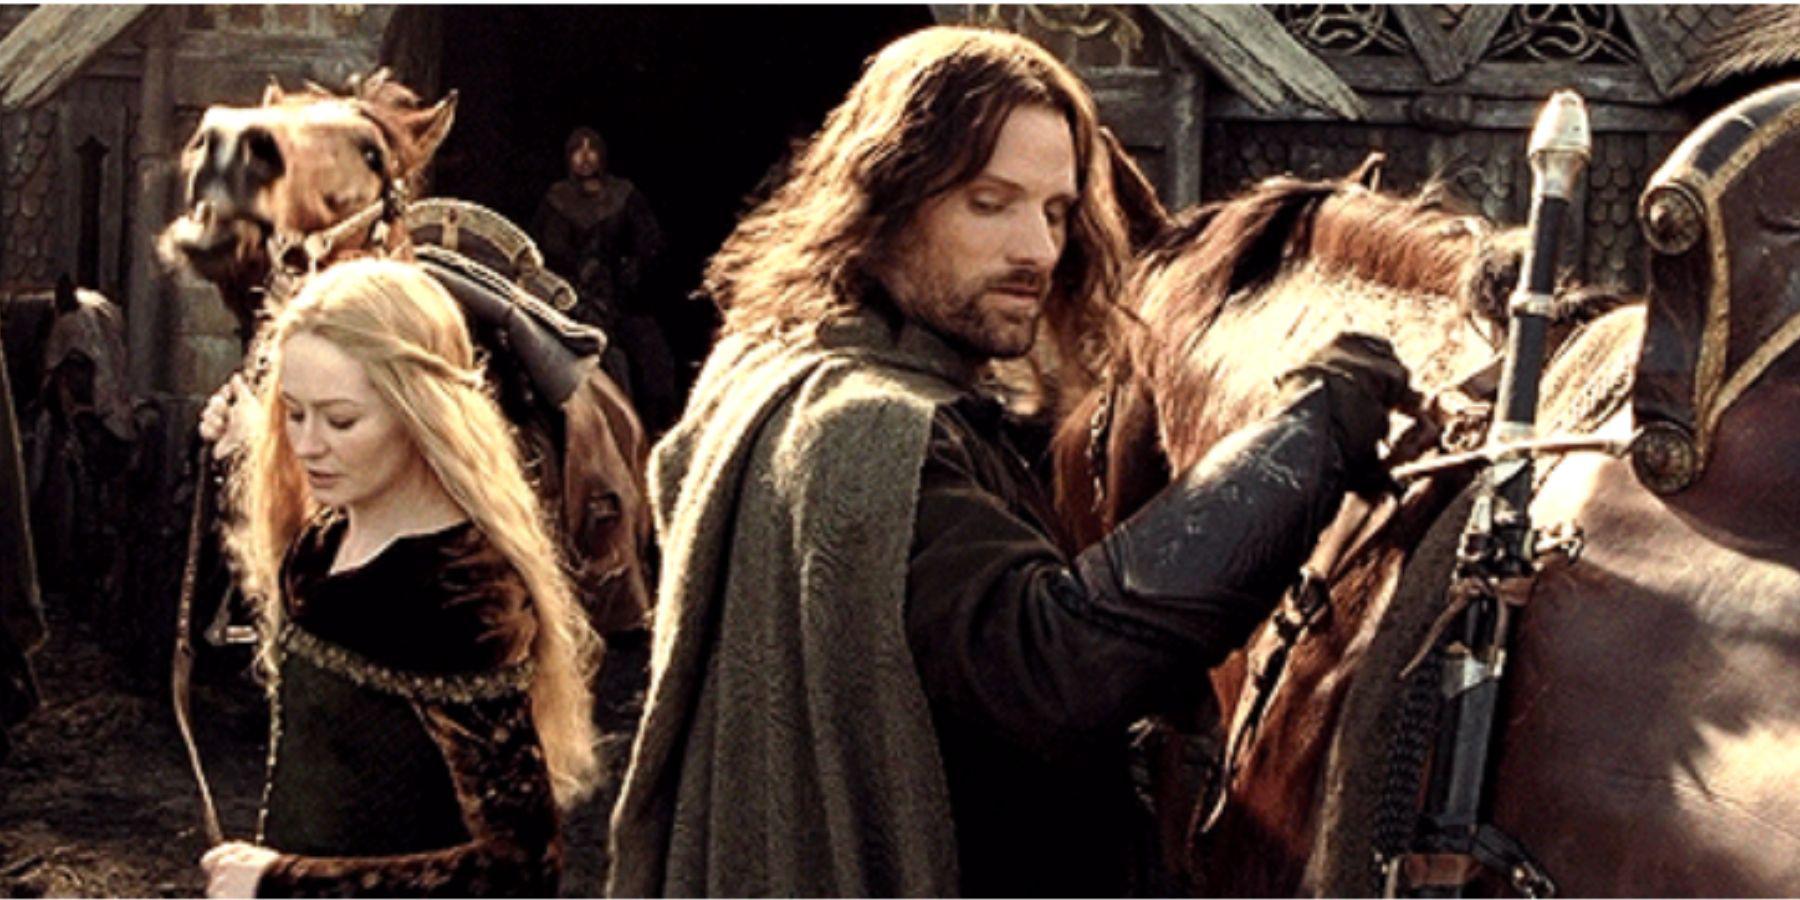 LOTR: Éowyn se contentou com Faramir porque Aragorn a rejeitou?